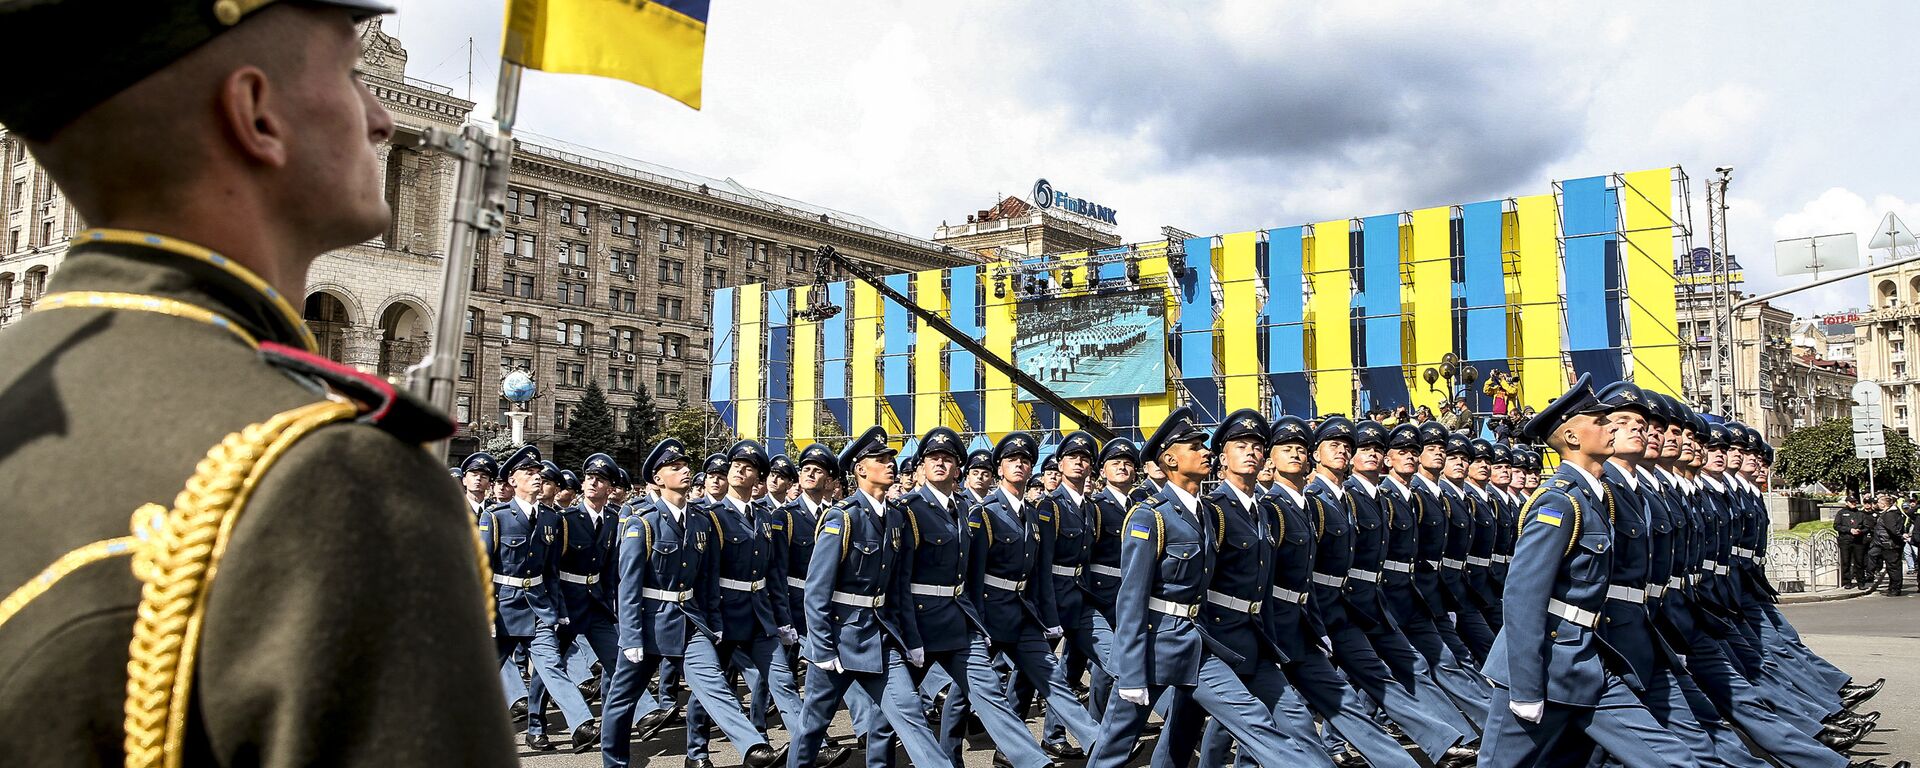 Парад в честь Дня независимости в Киеве - Sputnik Latvija, 1920, 30.05.2019